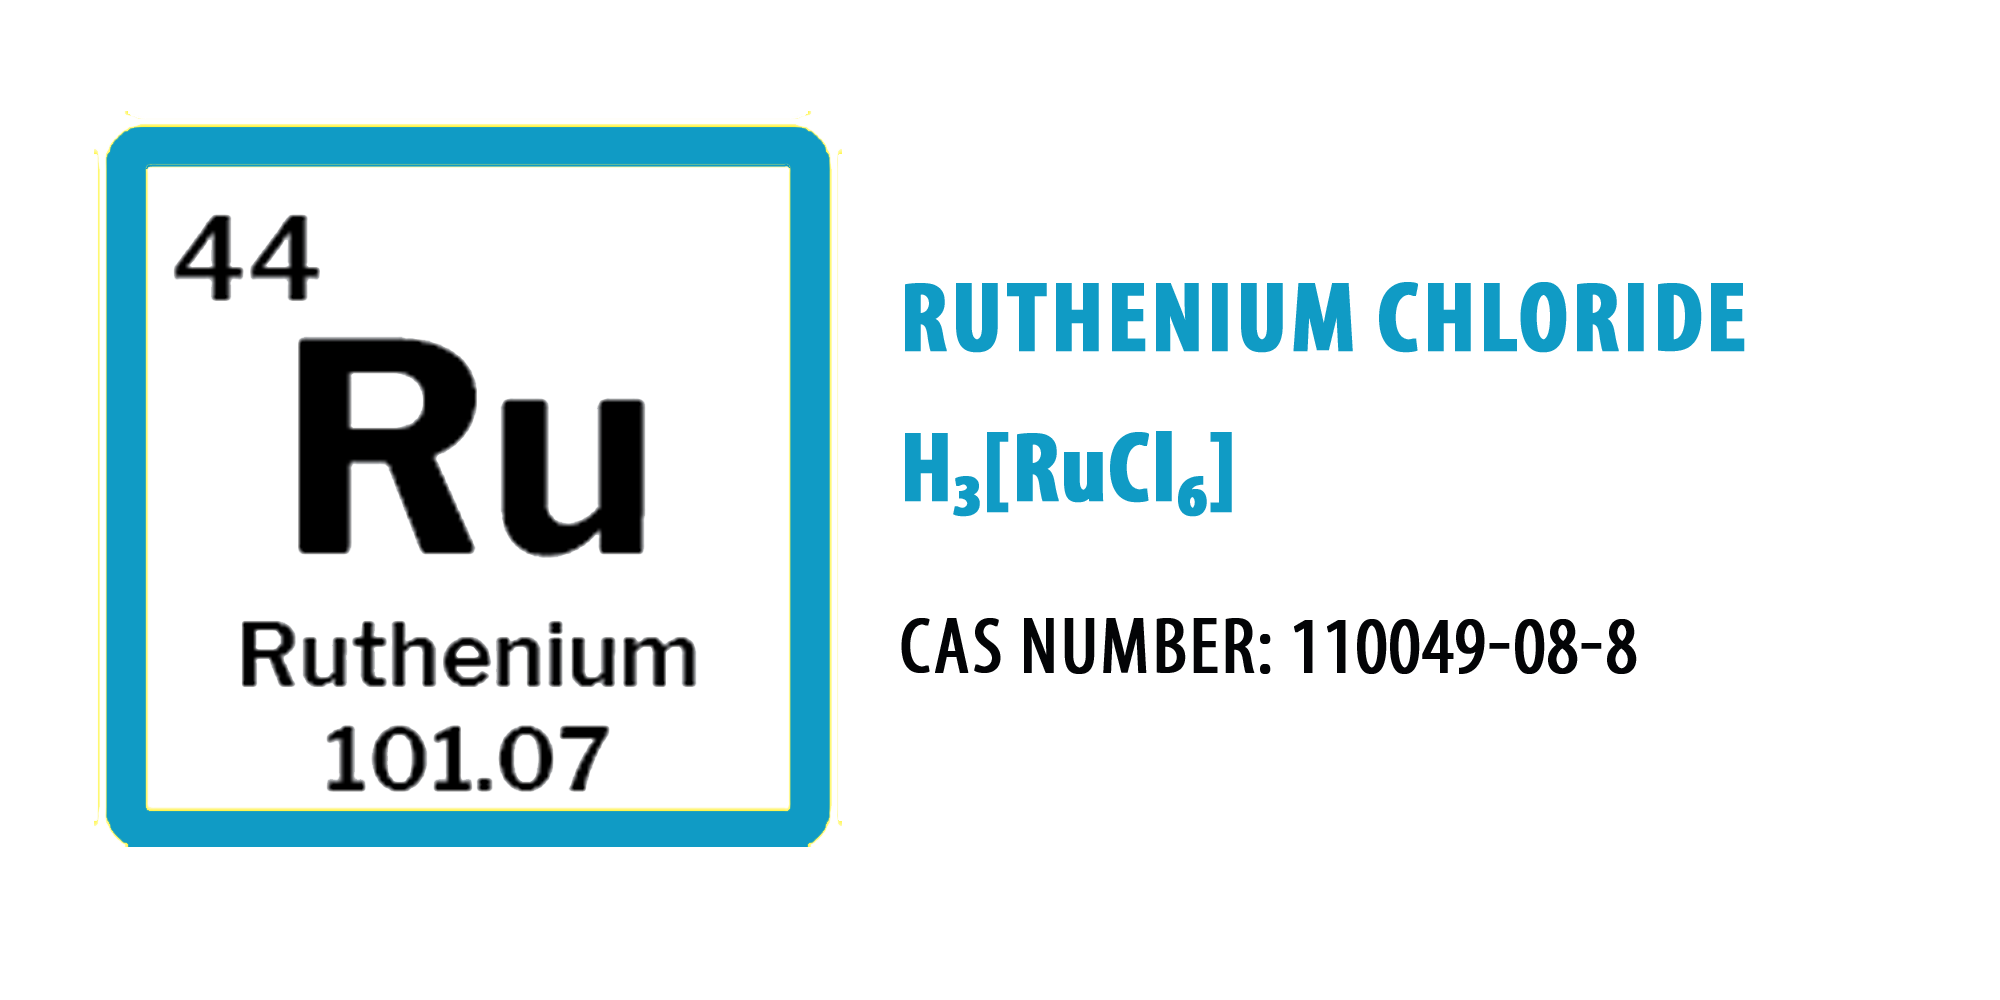 Ruthenium chloride